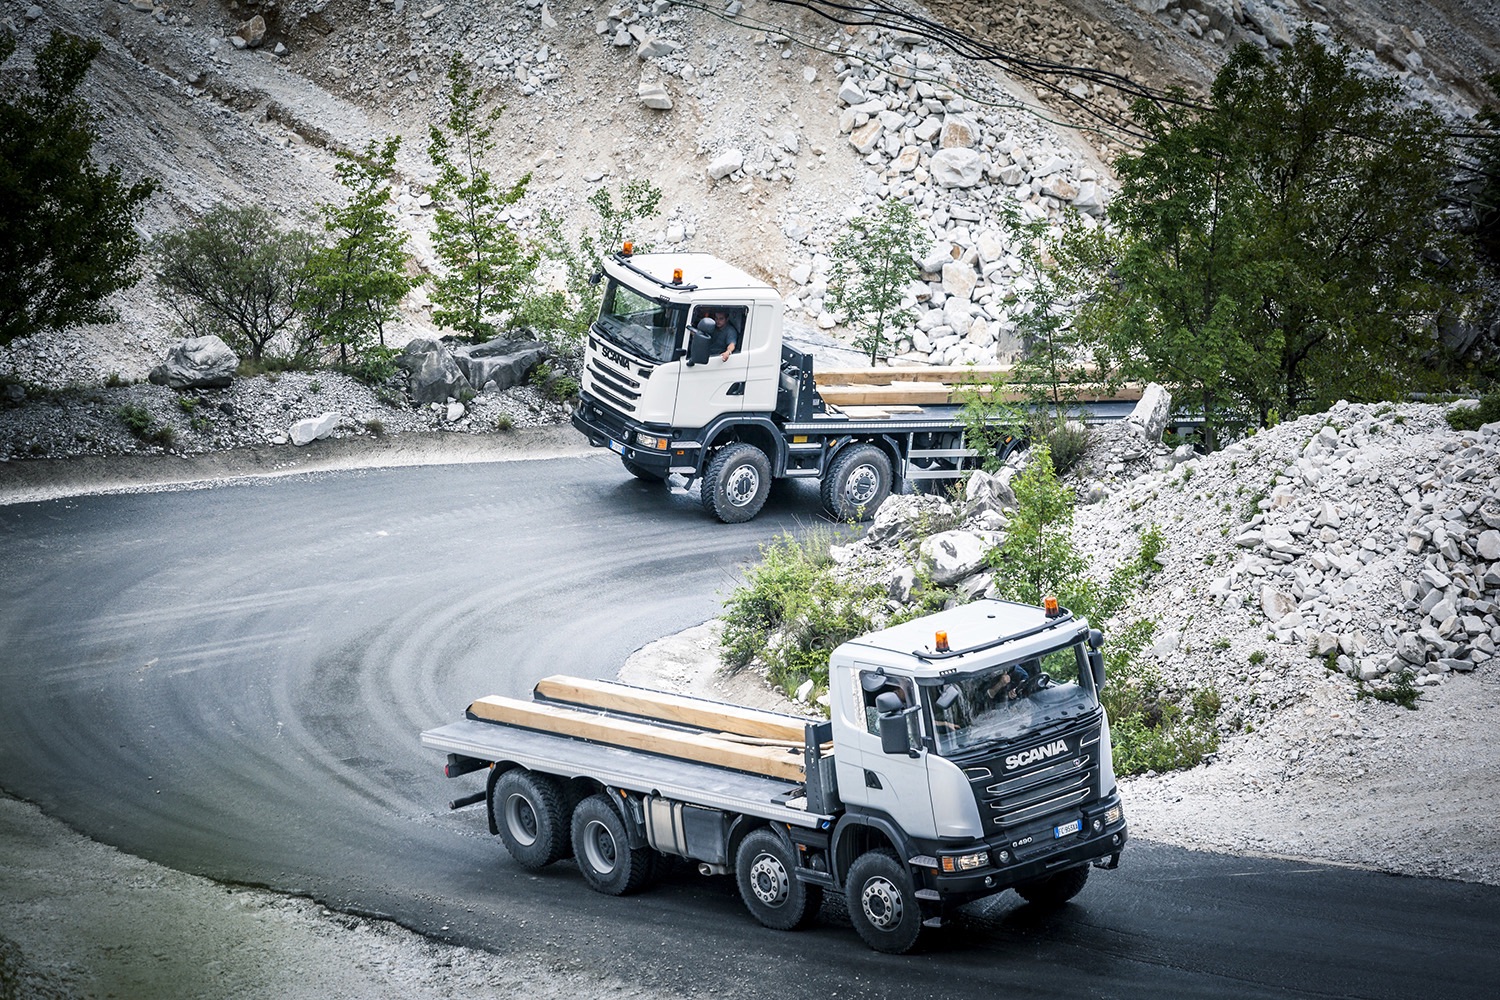  SCANIA 8X8 EURO 6 allestimento personalizzato  " marble truck" Gli-scania-fra-il-marmo-di-carrara-perforare-uncategorized-3